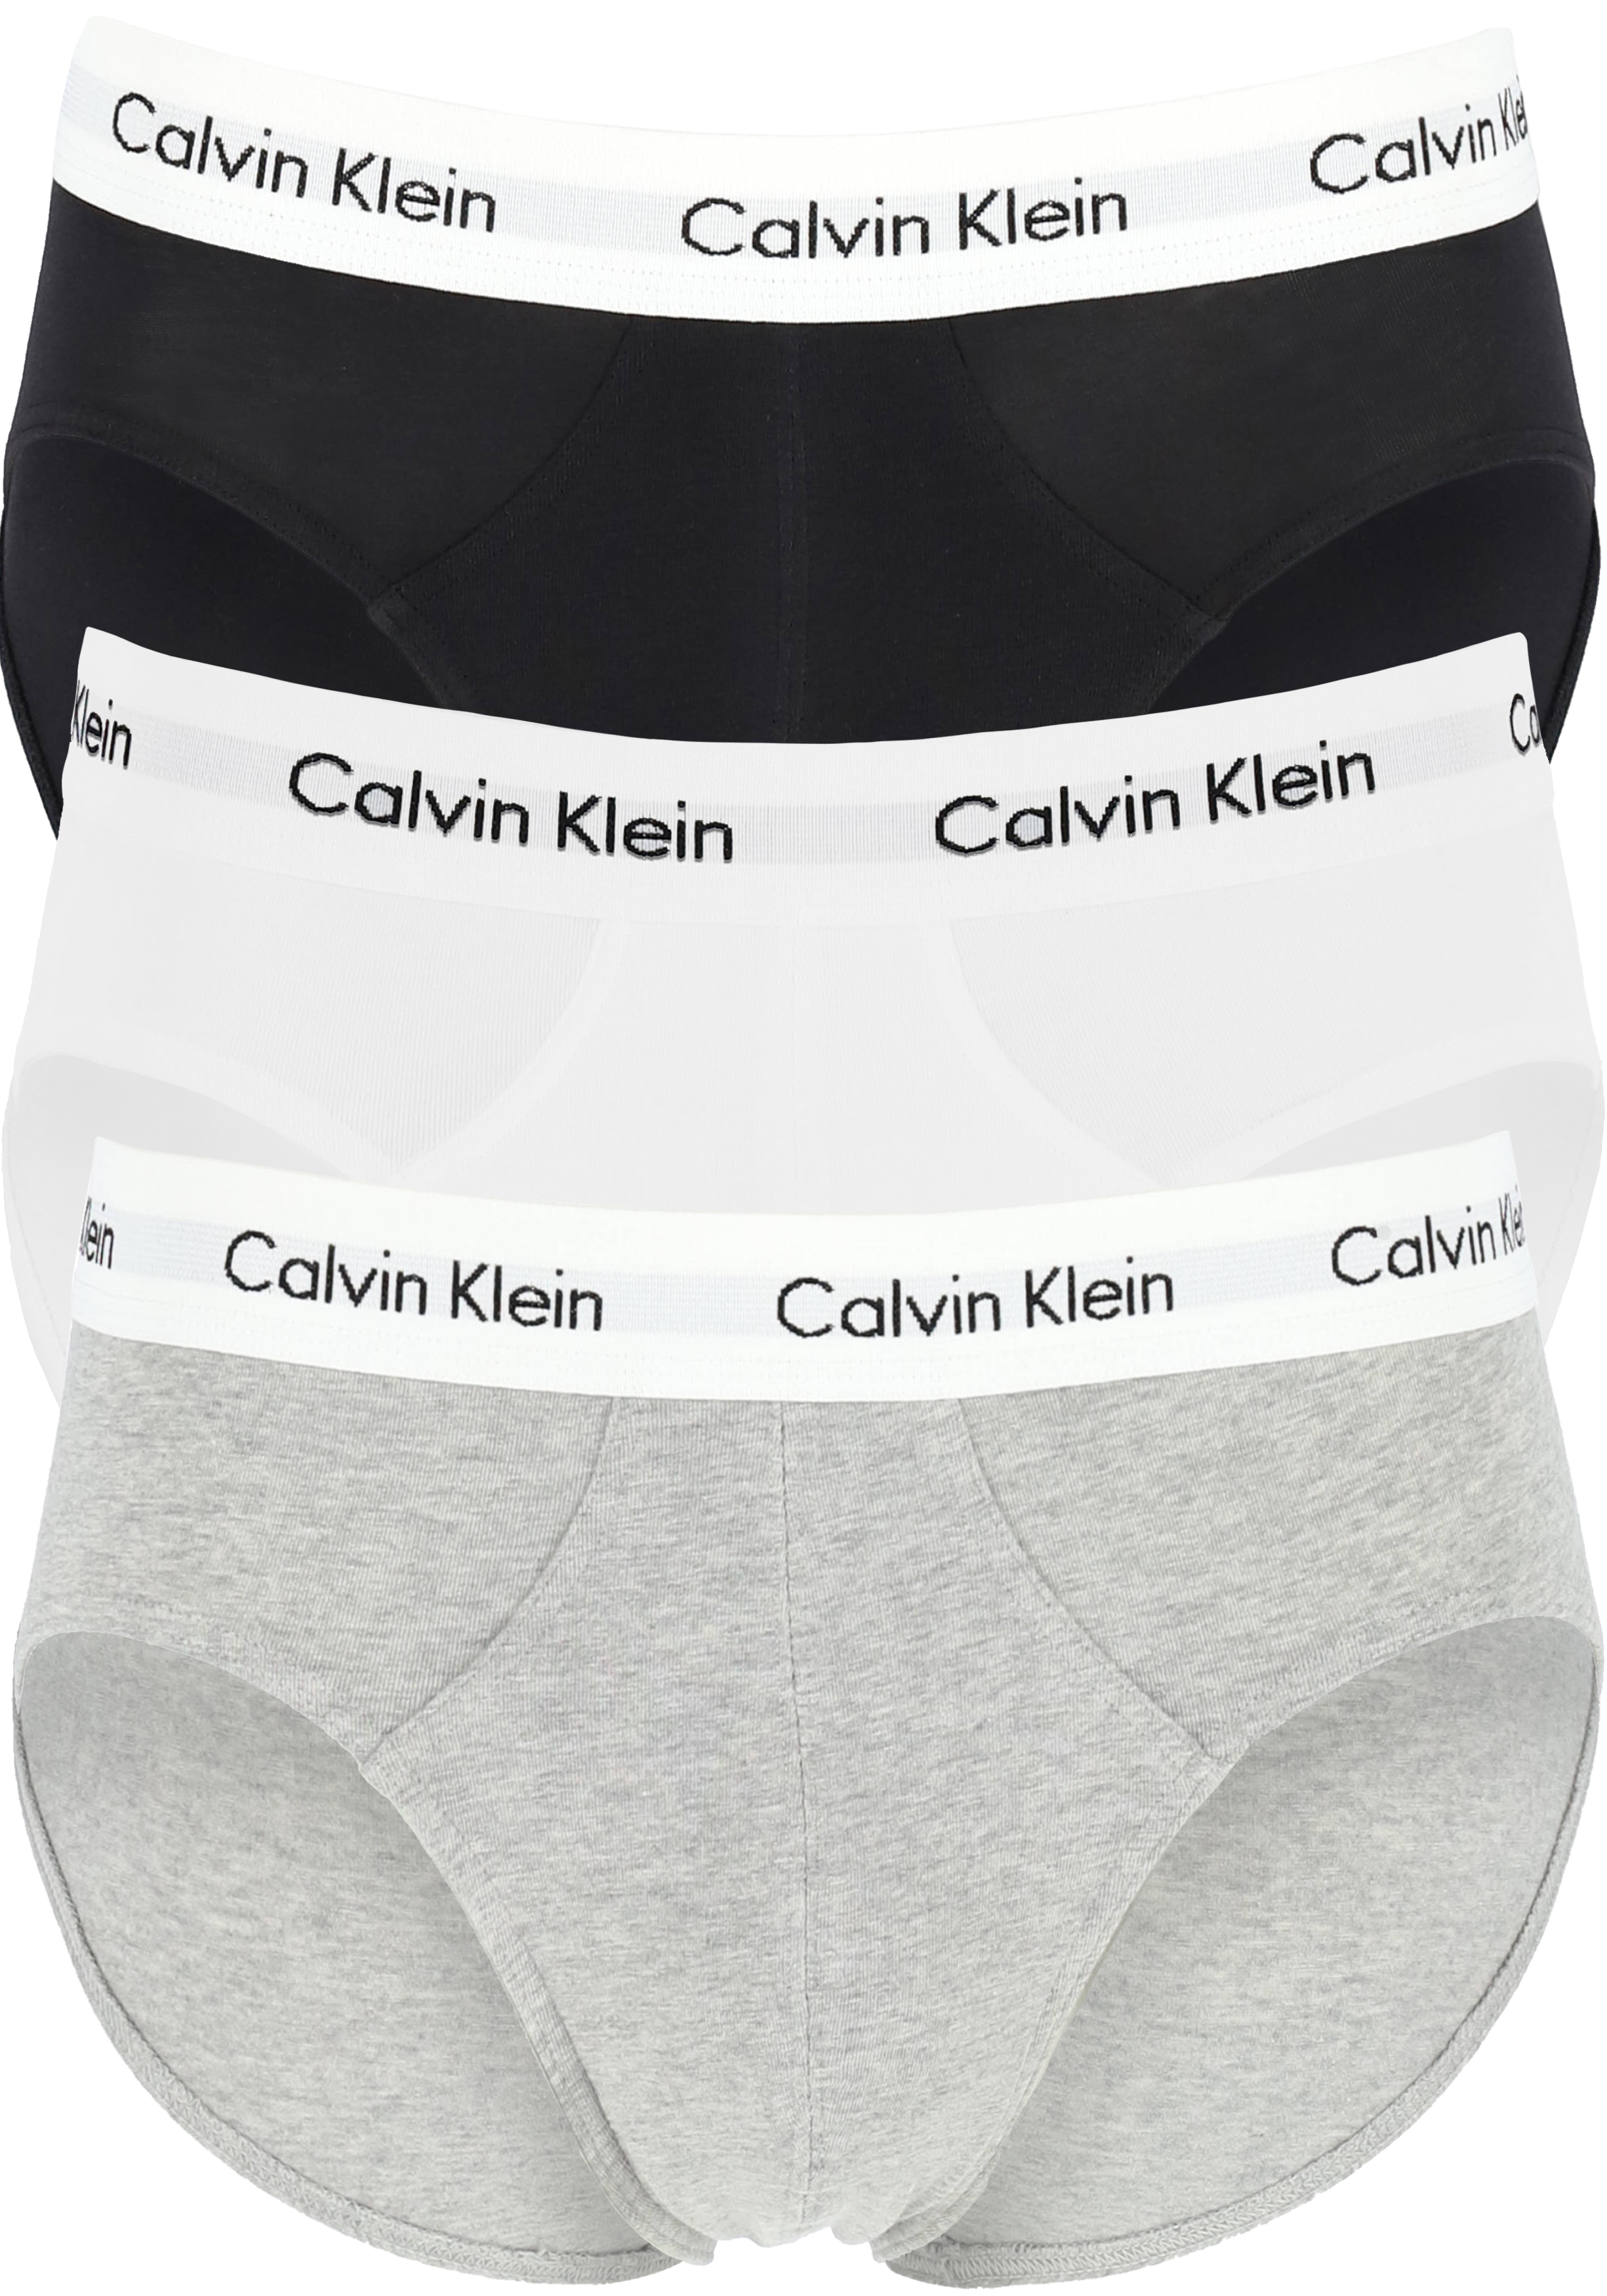 ijsje Word gek Mooie jurk Calvin Klein hipster brief (3-pack), heren slips, zwart, wit, grijs met...  - Shop de nieuwste voorjaarsmode